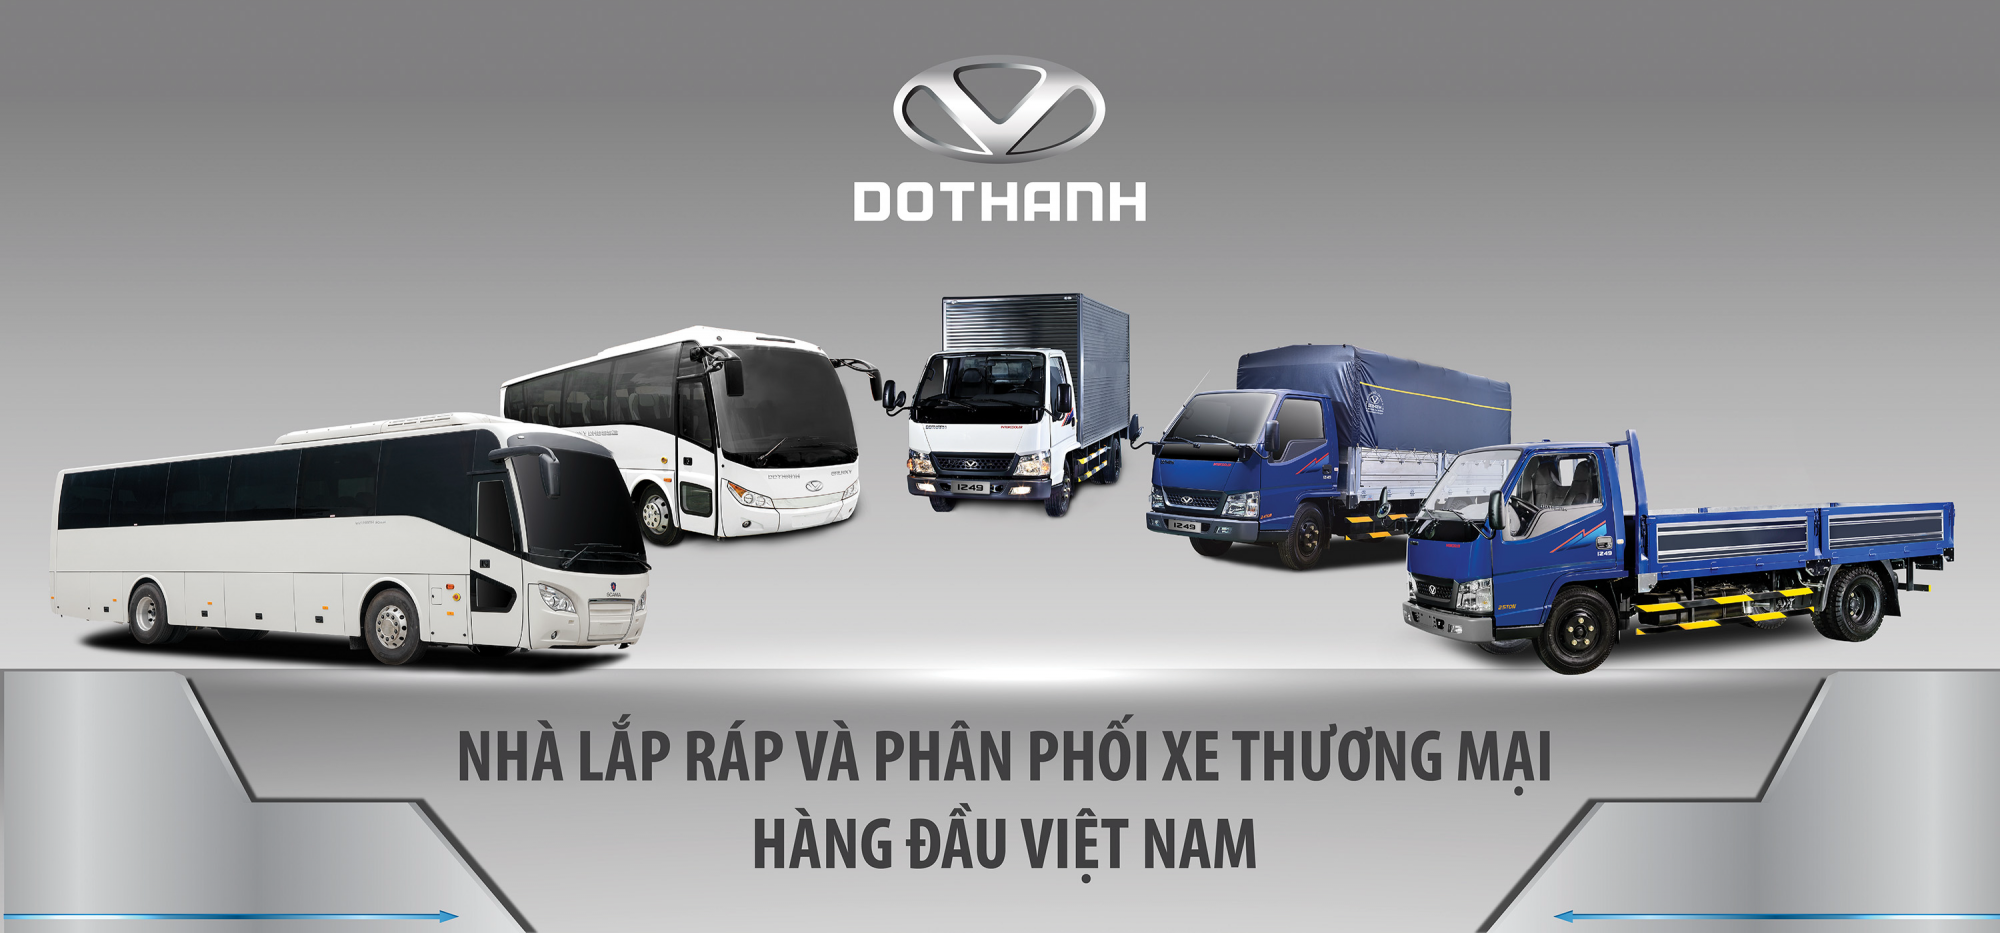 Xe Đô Thành – Thương hiệu Việt chất lượng hàng đầu